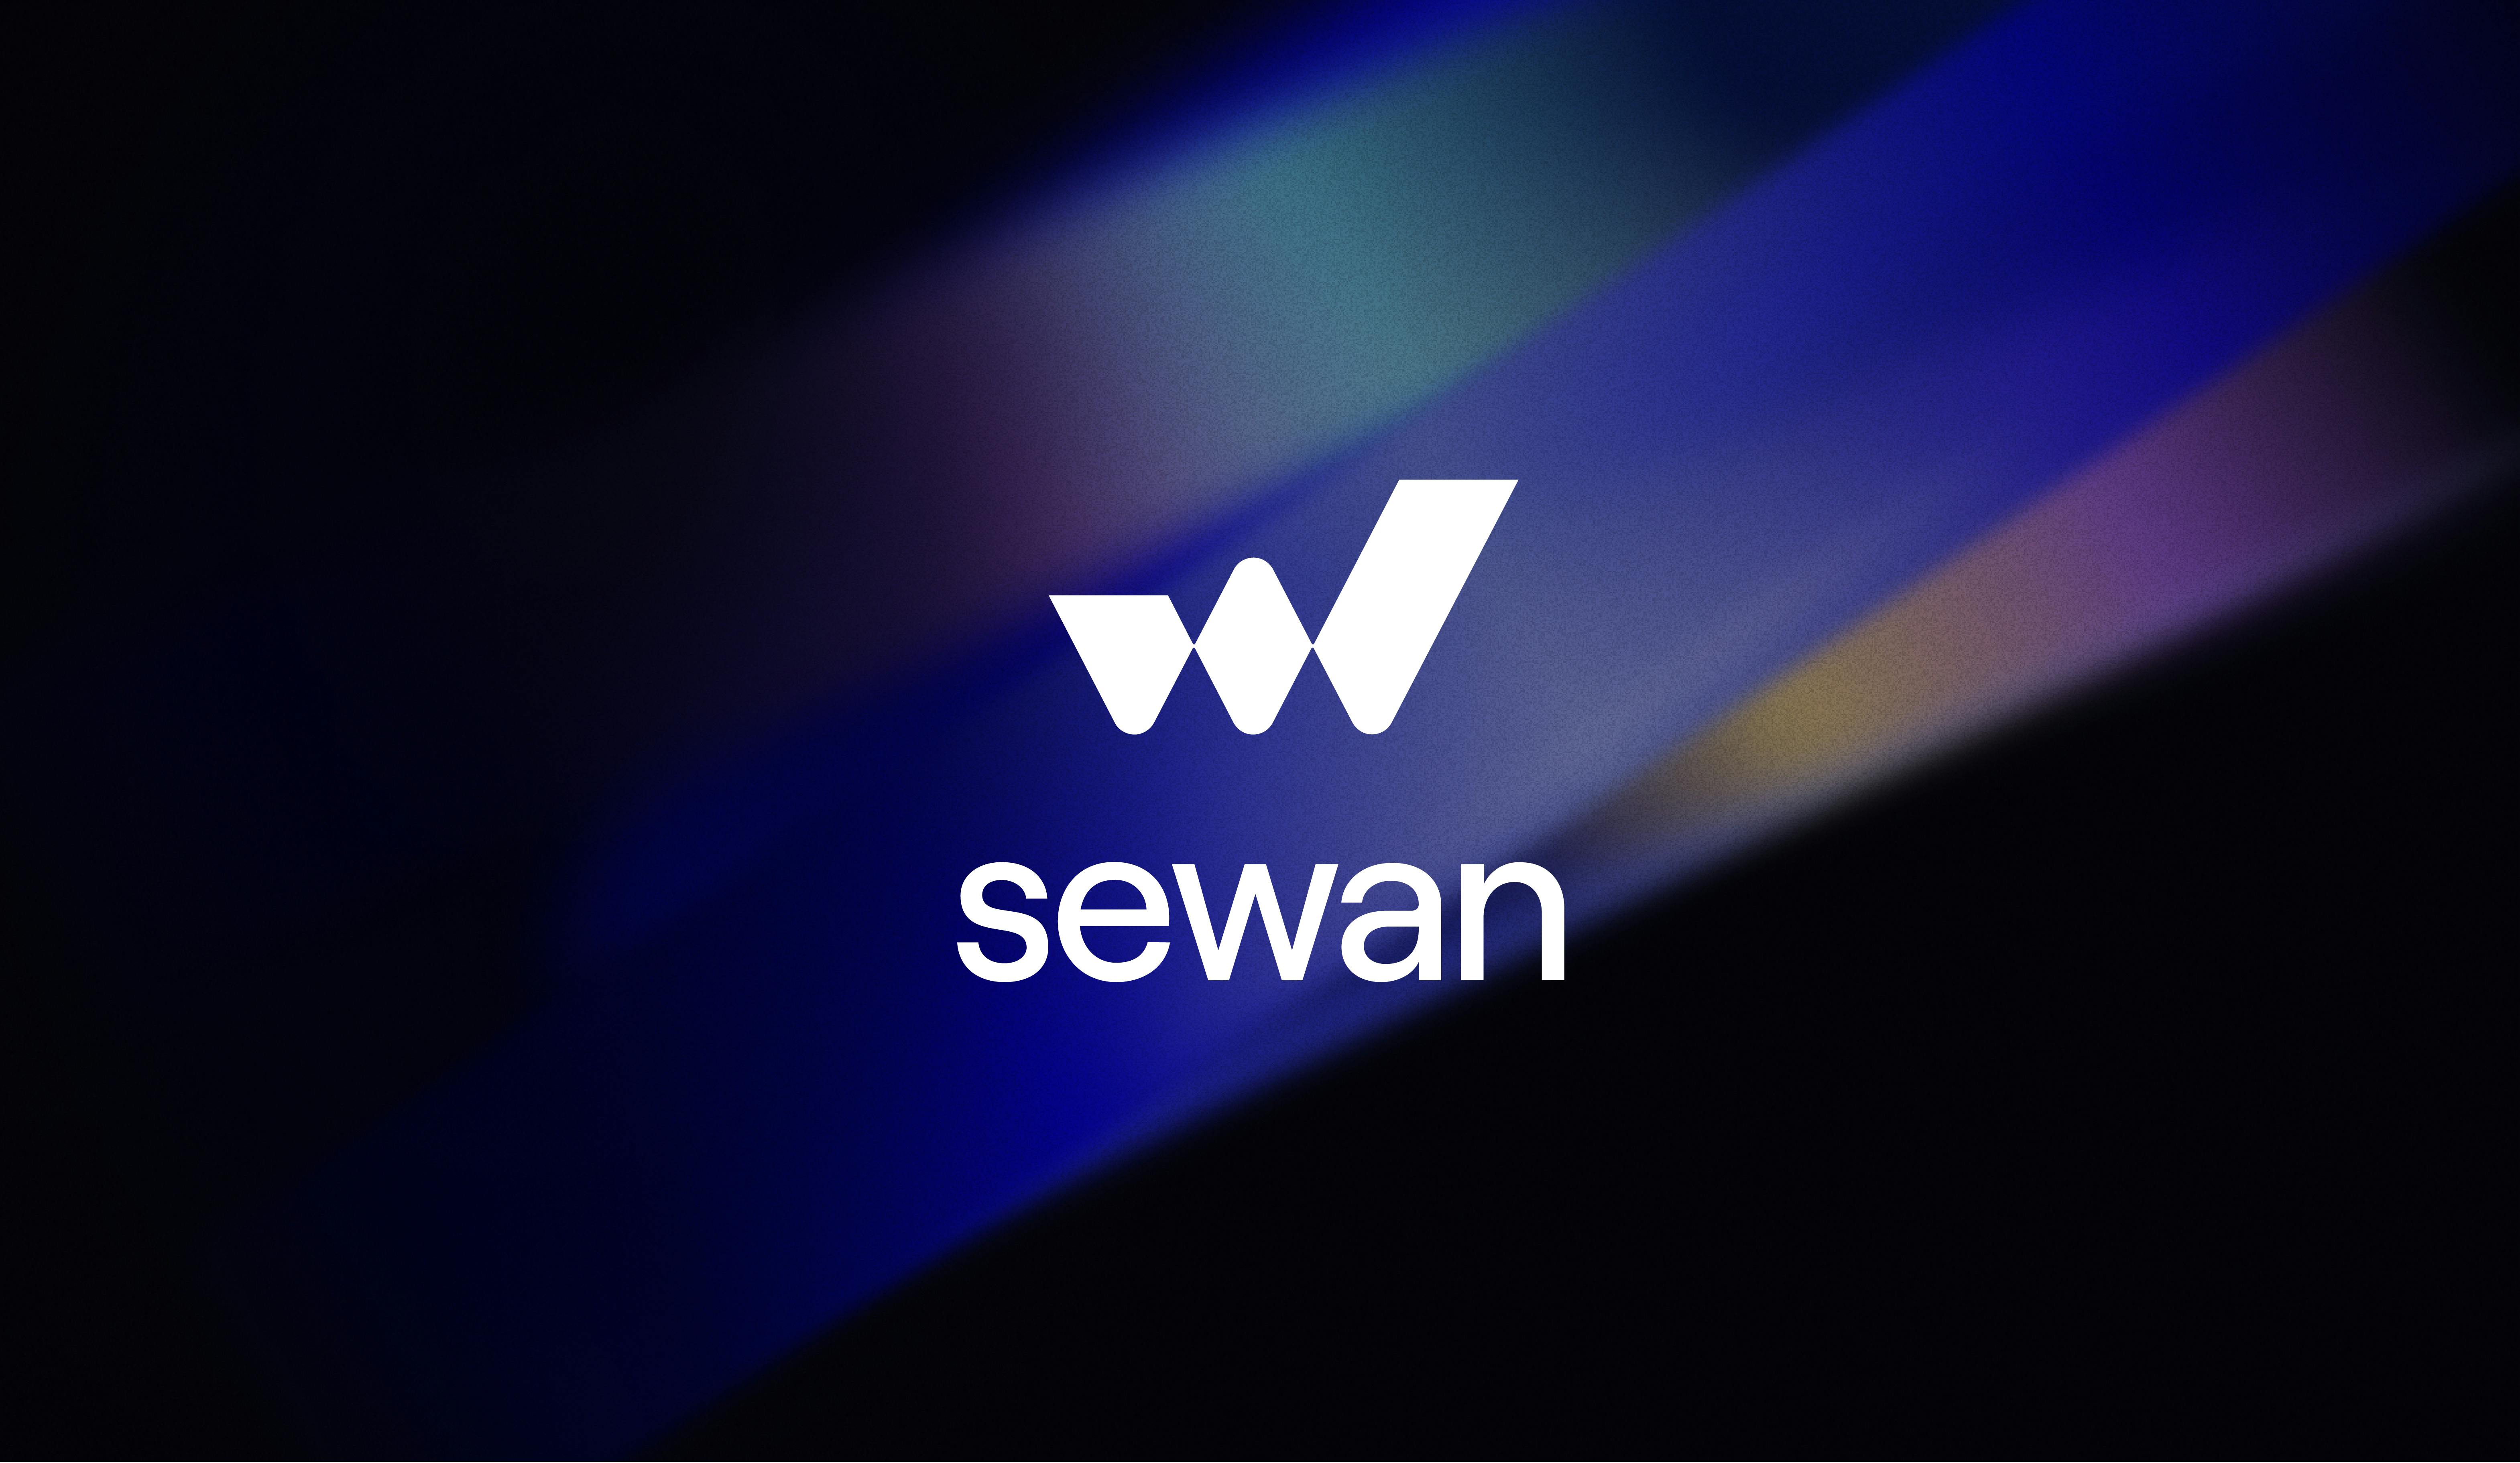 Sewan: ¡La historia de un cambio de imagen para brillar más!